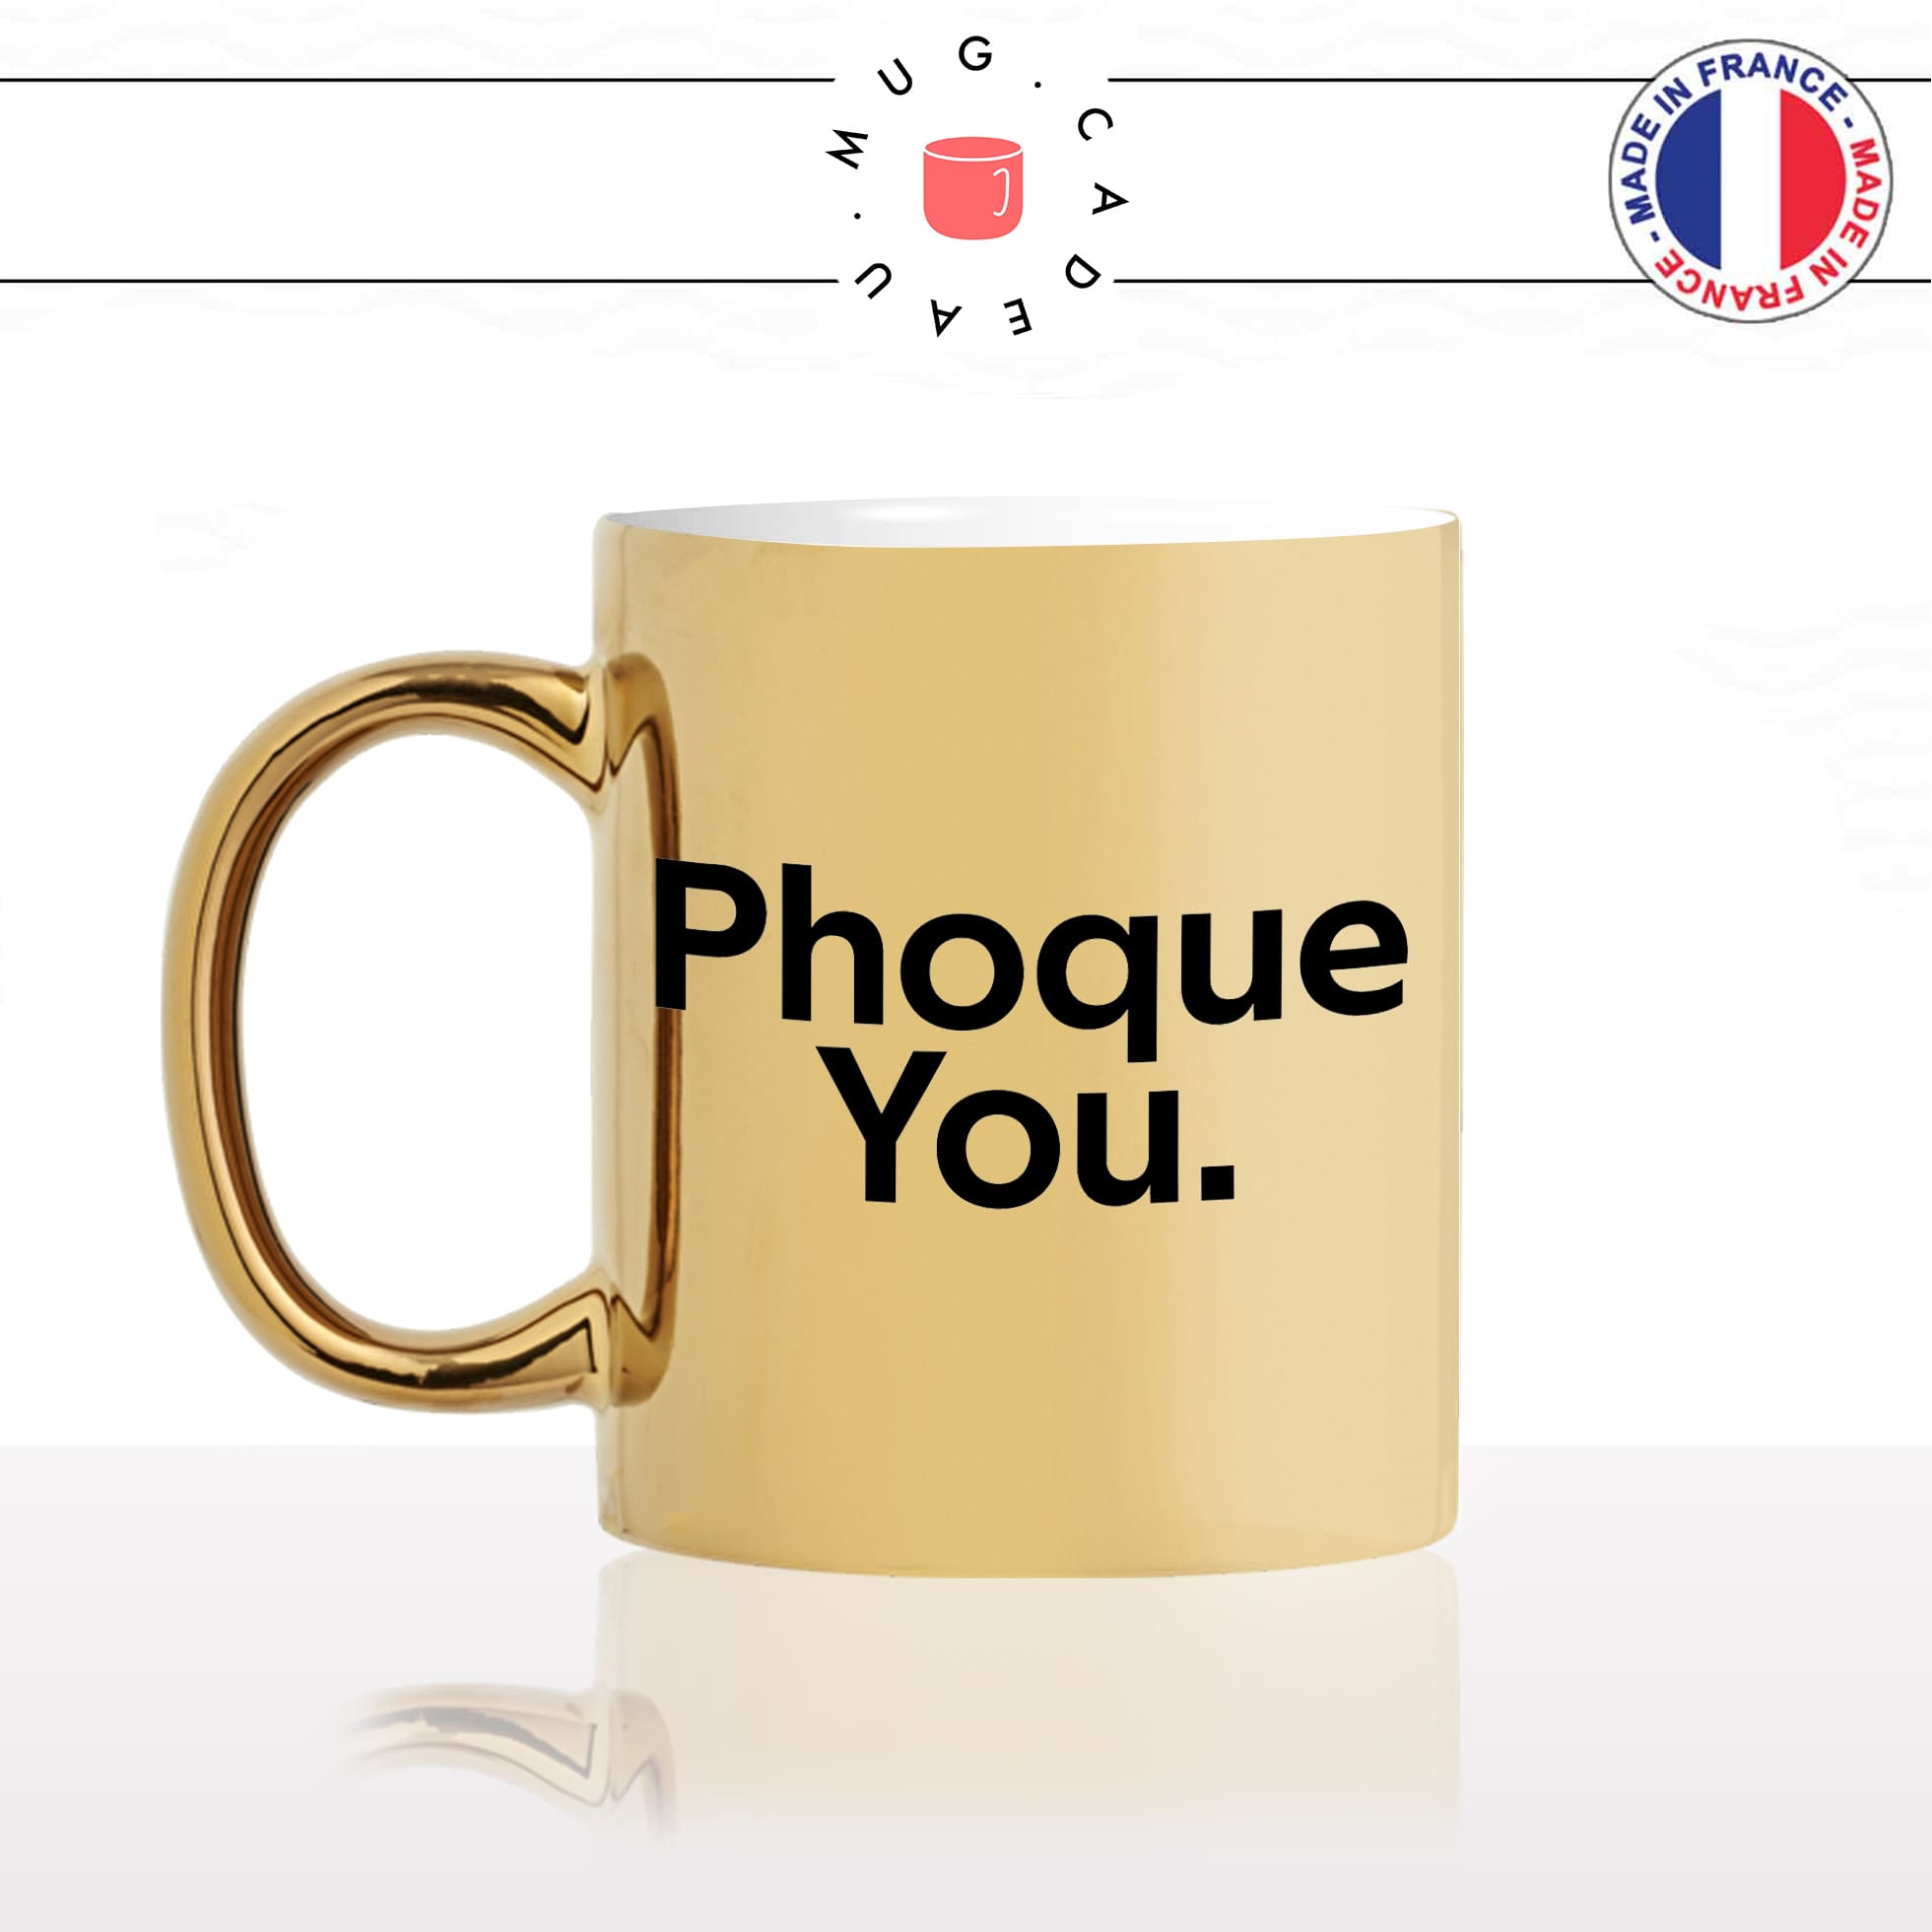 mug-tasse-or-doré-gold-phoque-you-fuck-u-animal-drole-humour-fun-idée-cadeau-originale-cool